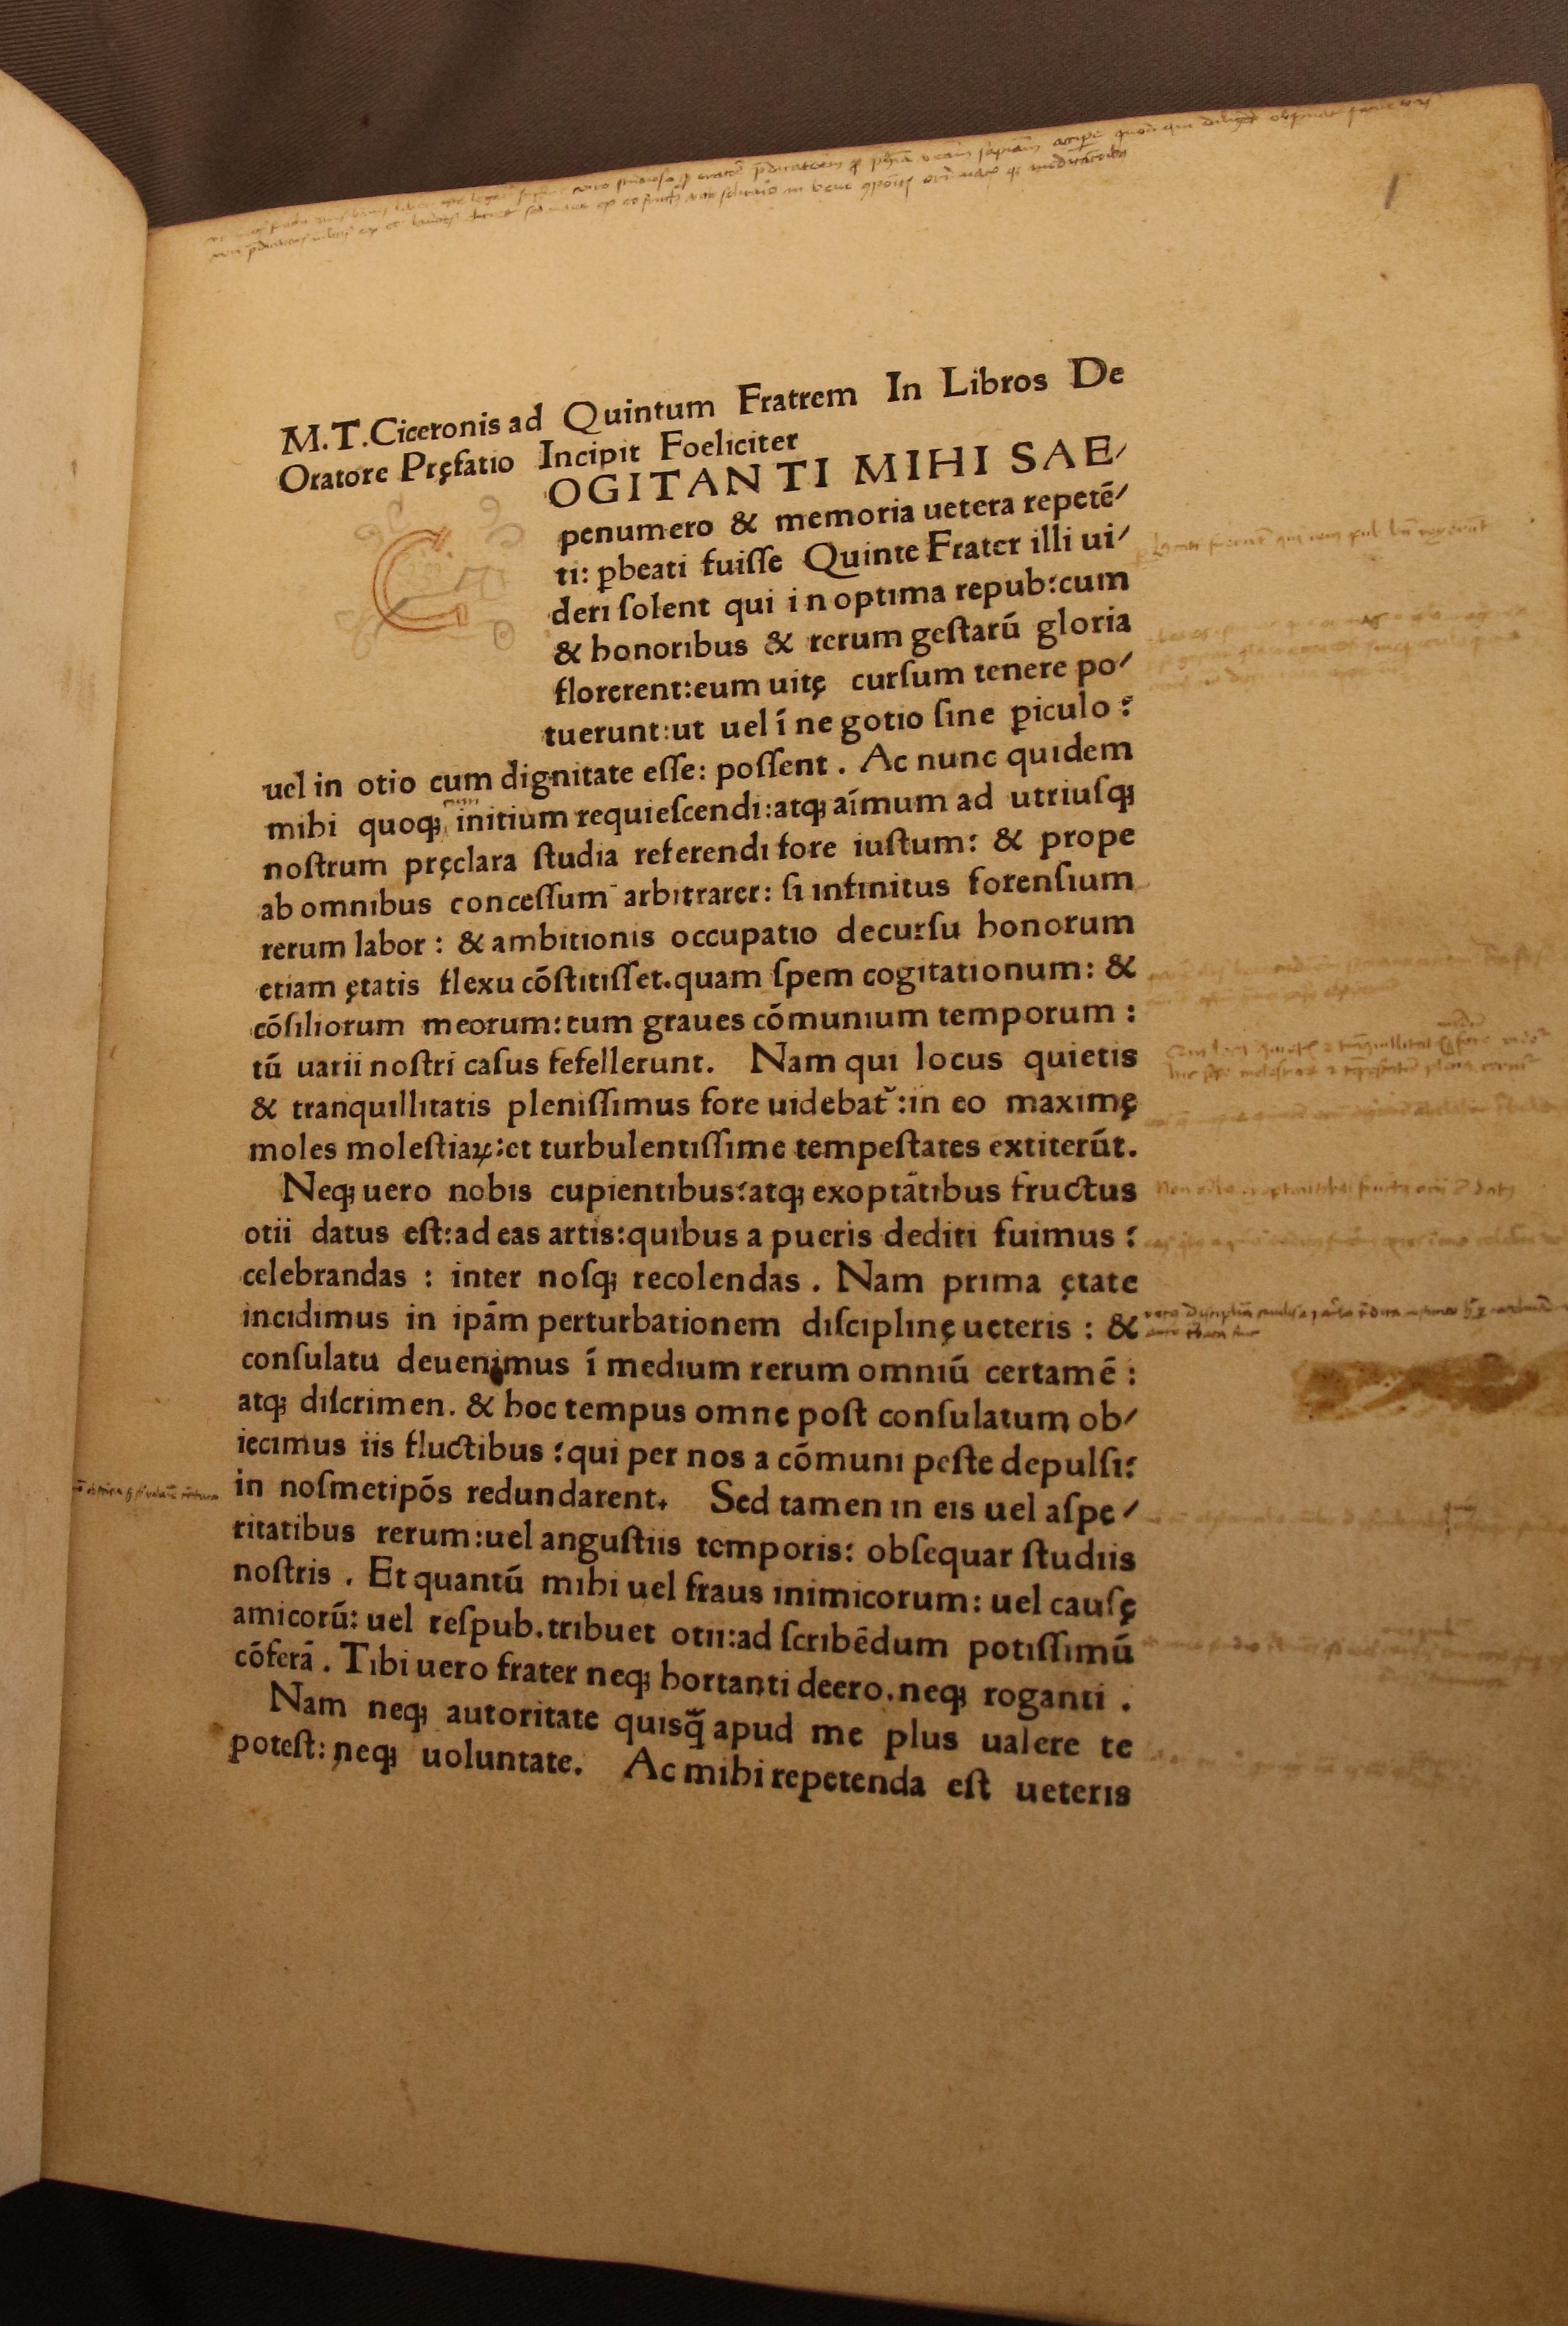 Ill. 5: Cicero, De Oratore (Venetië: Wendelinus van Spira, 1470), exemplaar UB Groningen Ill. 5: Cicero, De Oratore (Venice: Wendelinus de Spira, 1470), University of Groningen Library copy